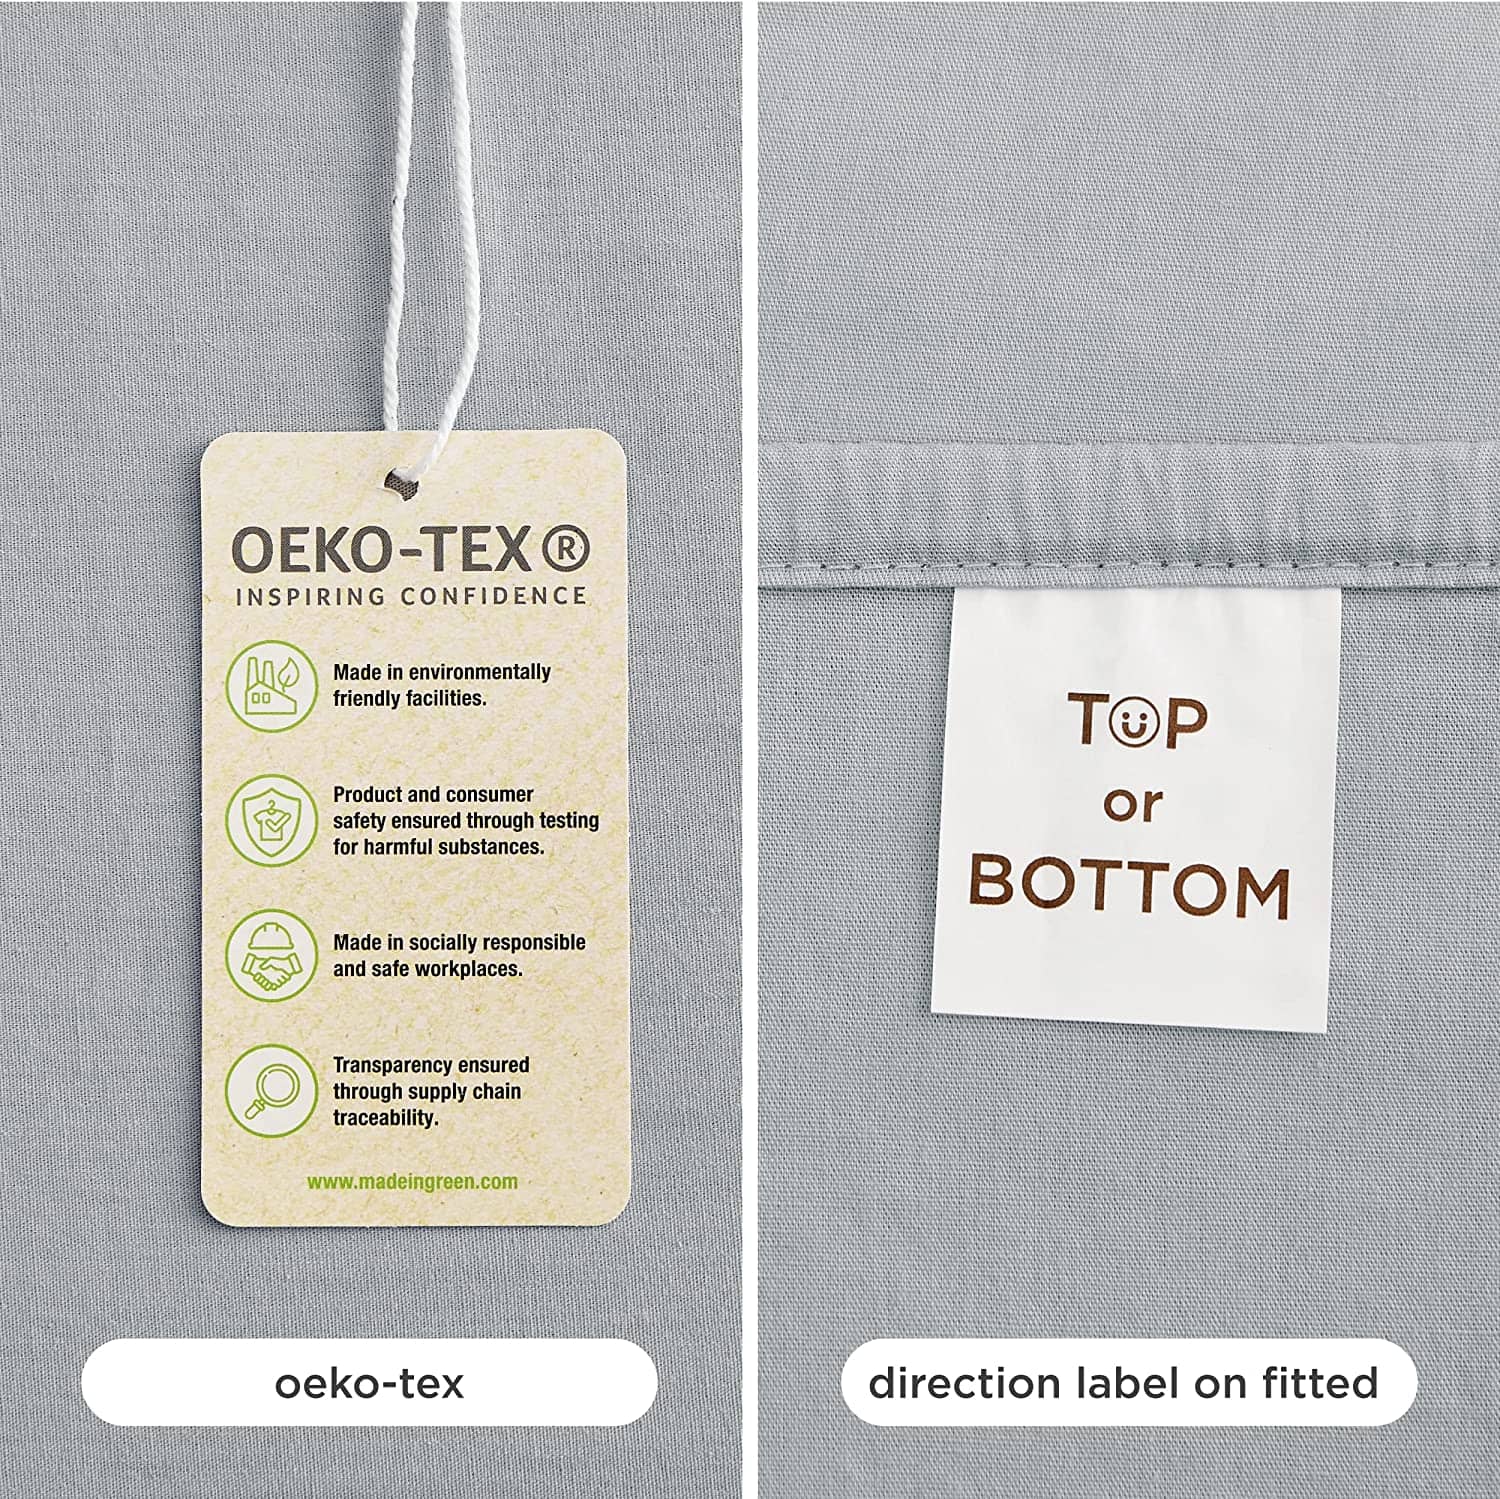 Bedsure 100% Lightweight Percale T180 Cotton Sheet Sets